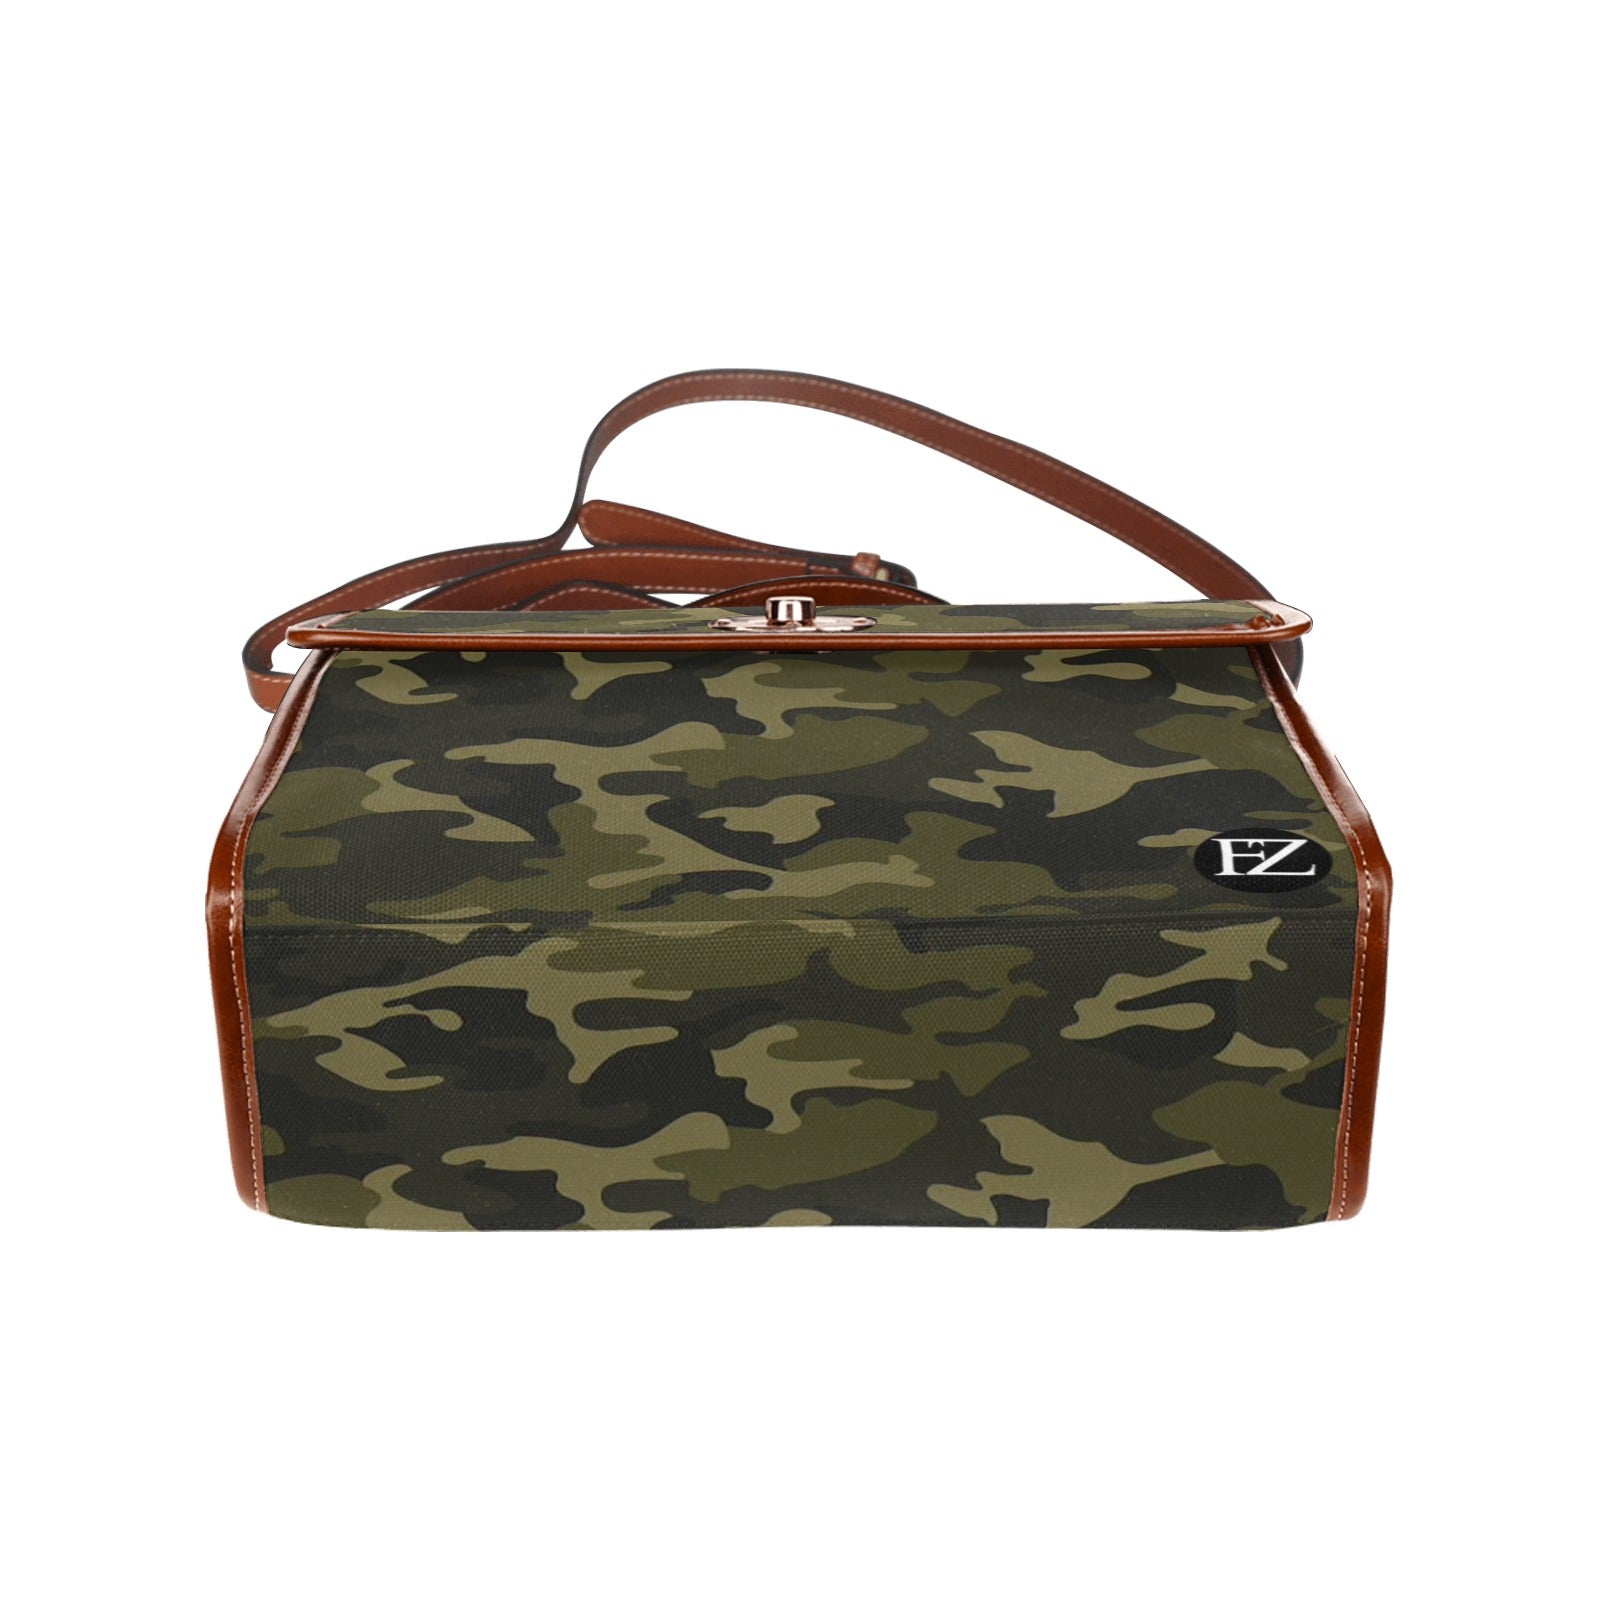 fz handbag - army